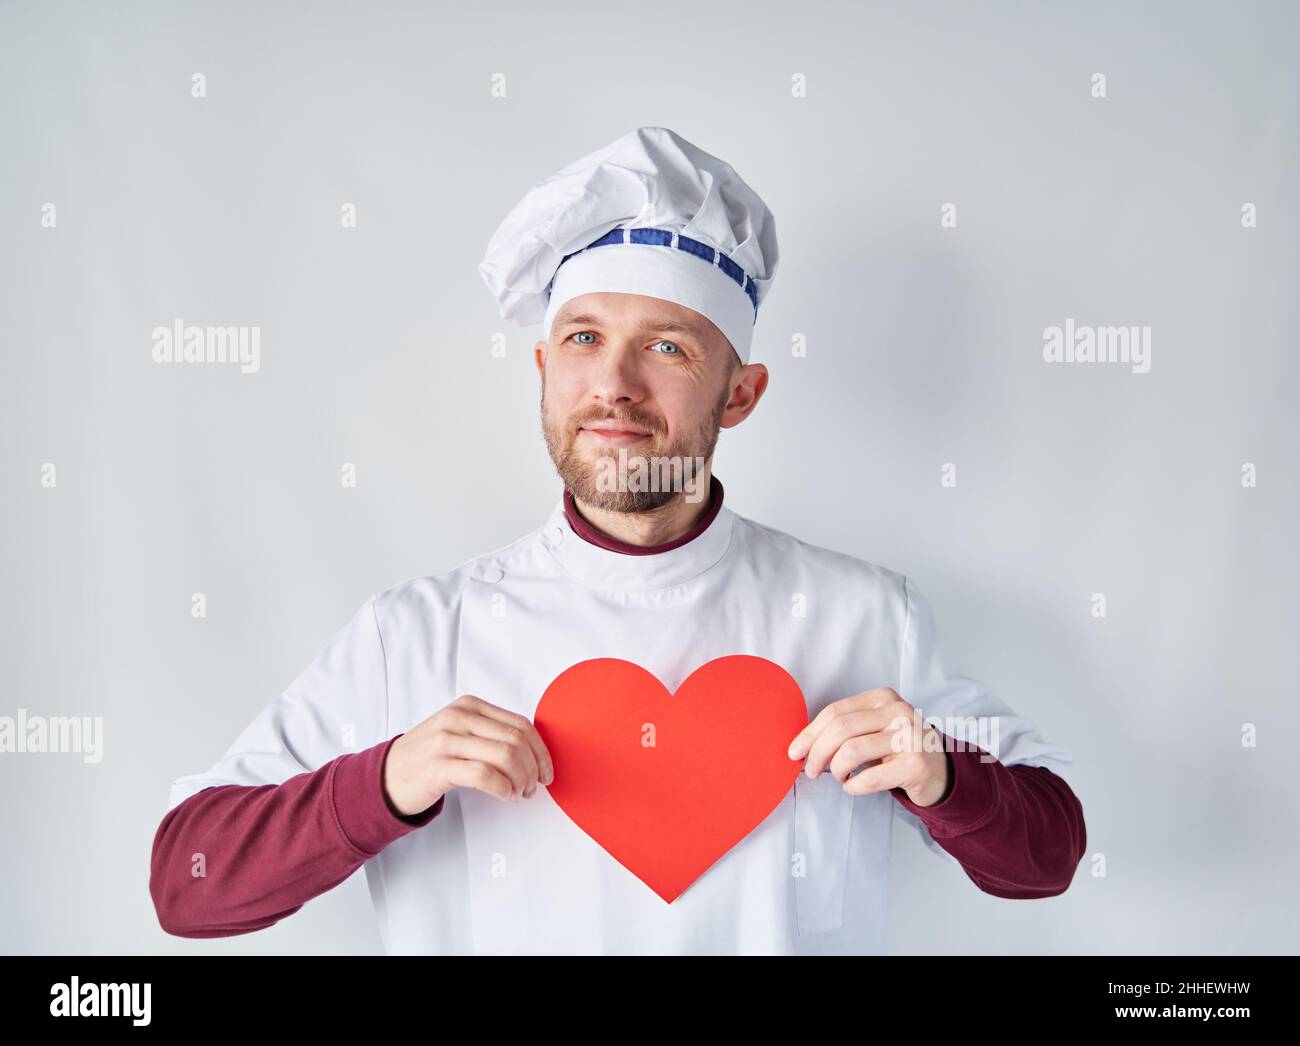 Chef attrayant tenant un coeur rouge devant le vêtement de travail.Chef barbu ou boulanger en uniforme blanc avec coeur en papier rouge en forme de Saint-Valentin, romance ou amour concept.Photo de haute qualité Banque D'Images